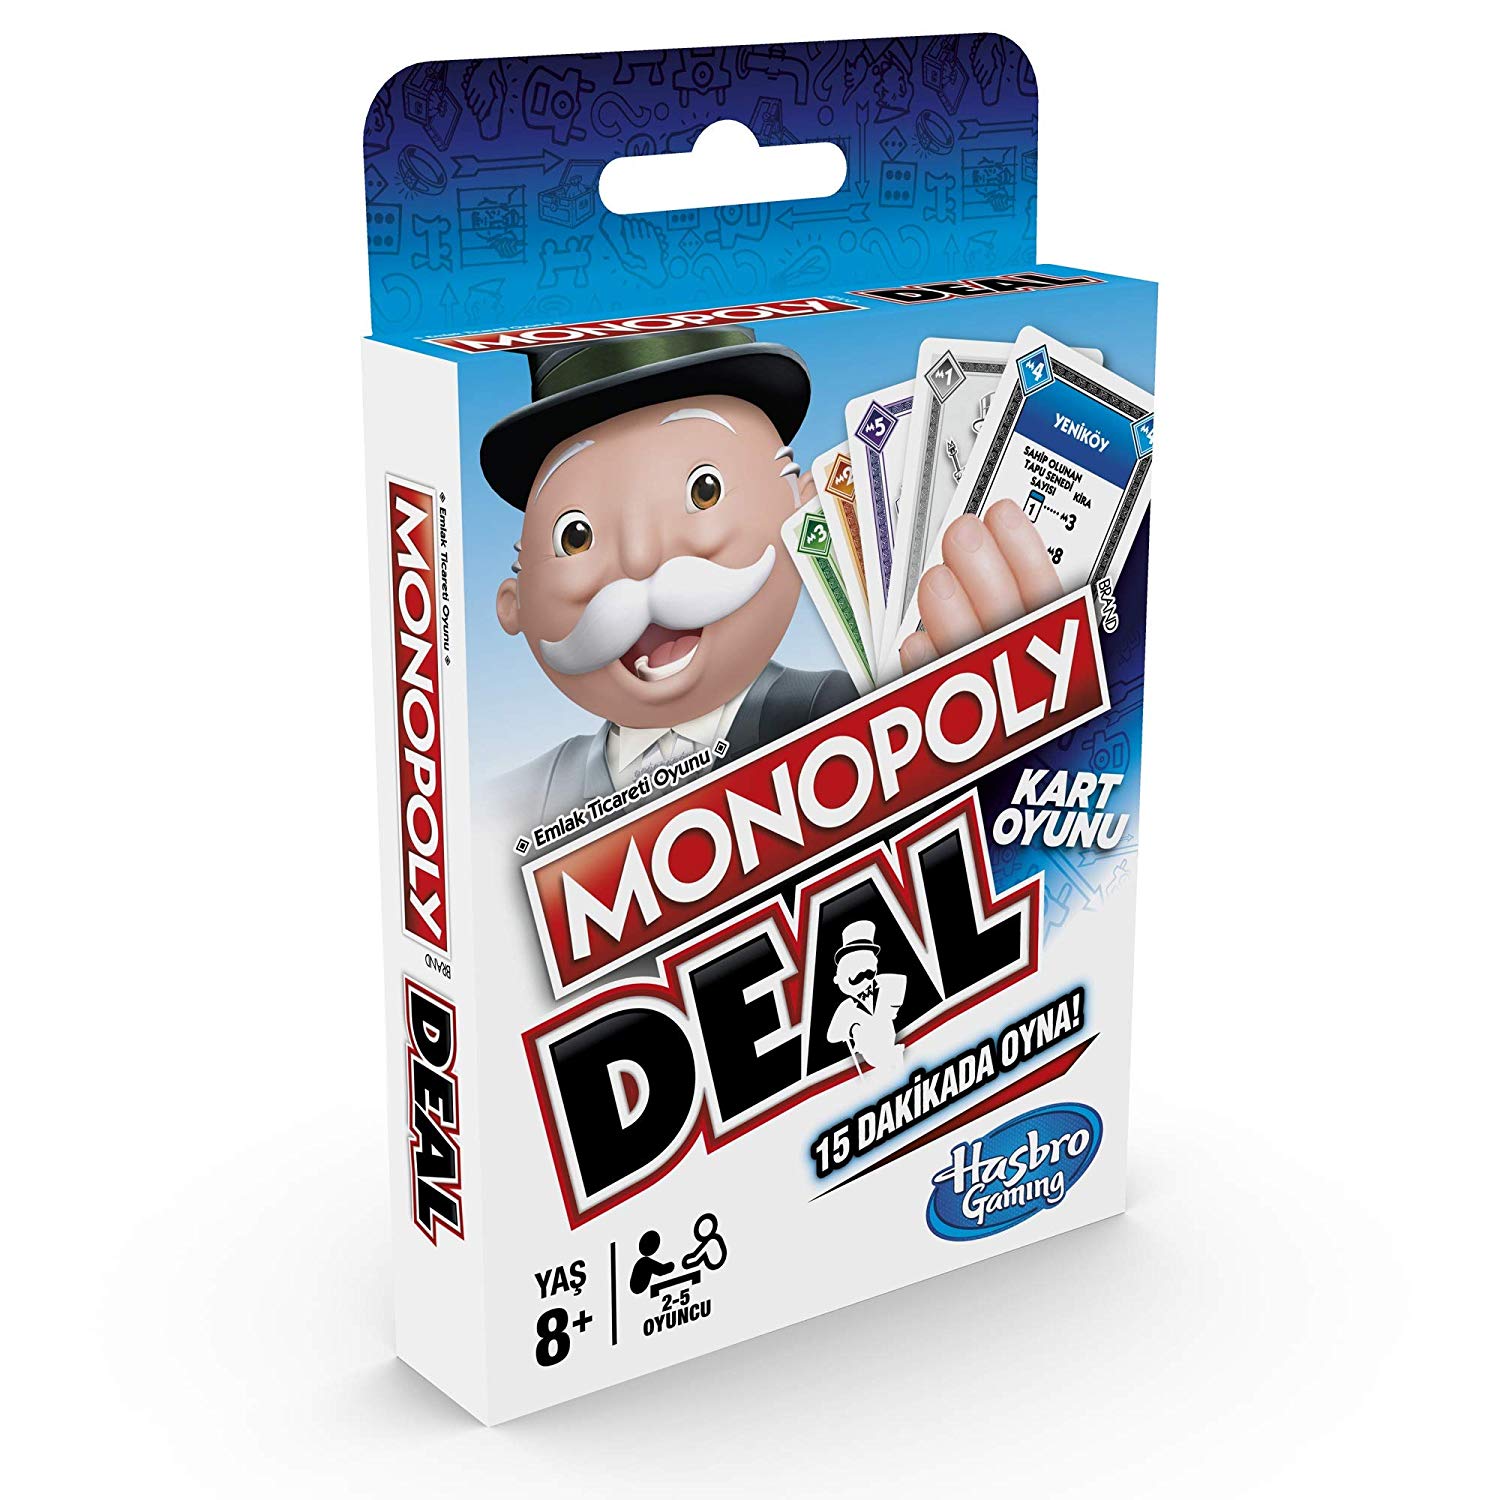 Hasbro Monopoly Deal E3113 Hızlı Kart Oyunu